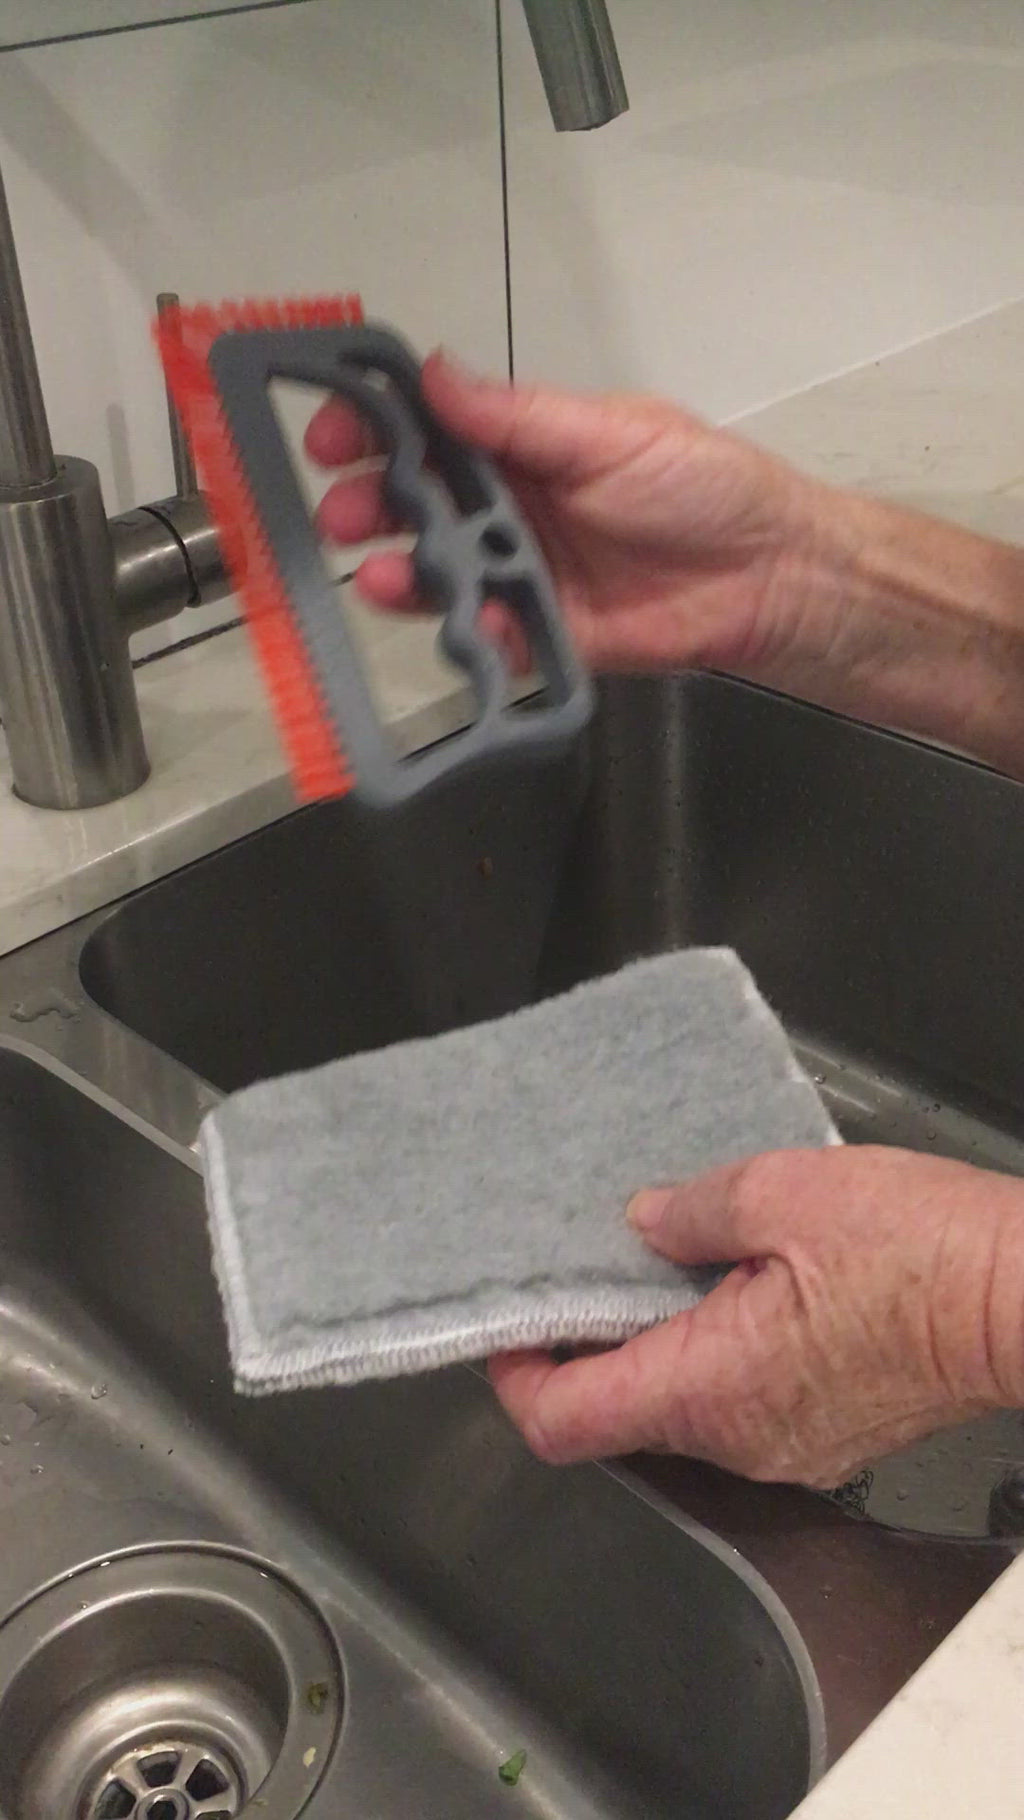 A Brush for Scrubbing Tile Floors